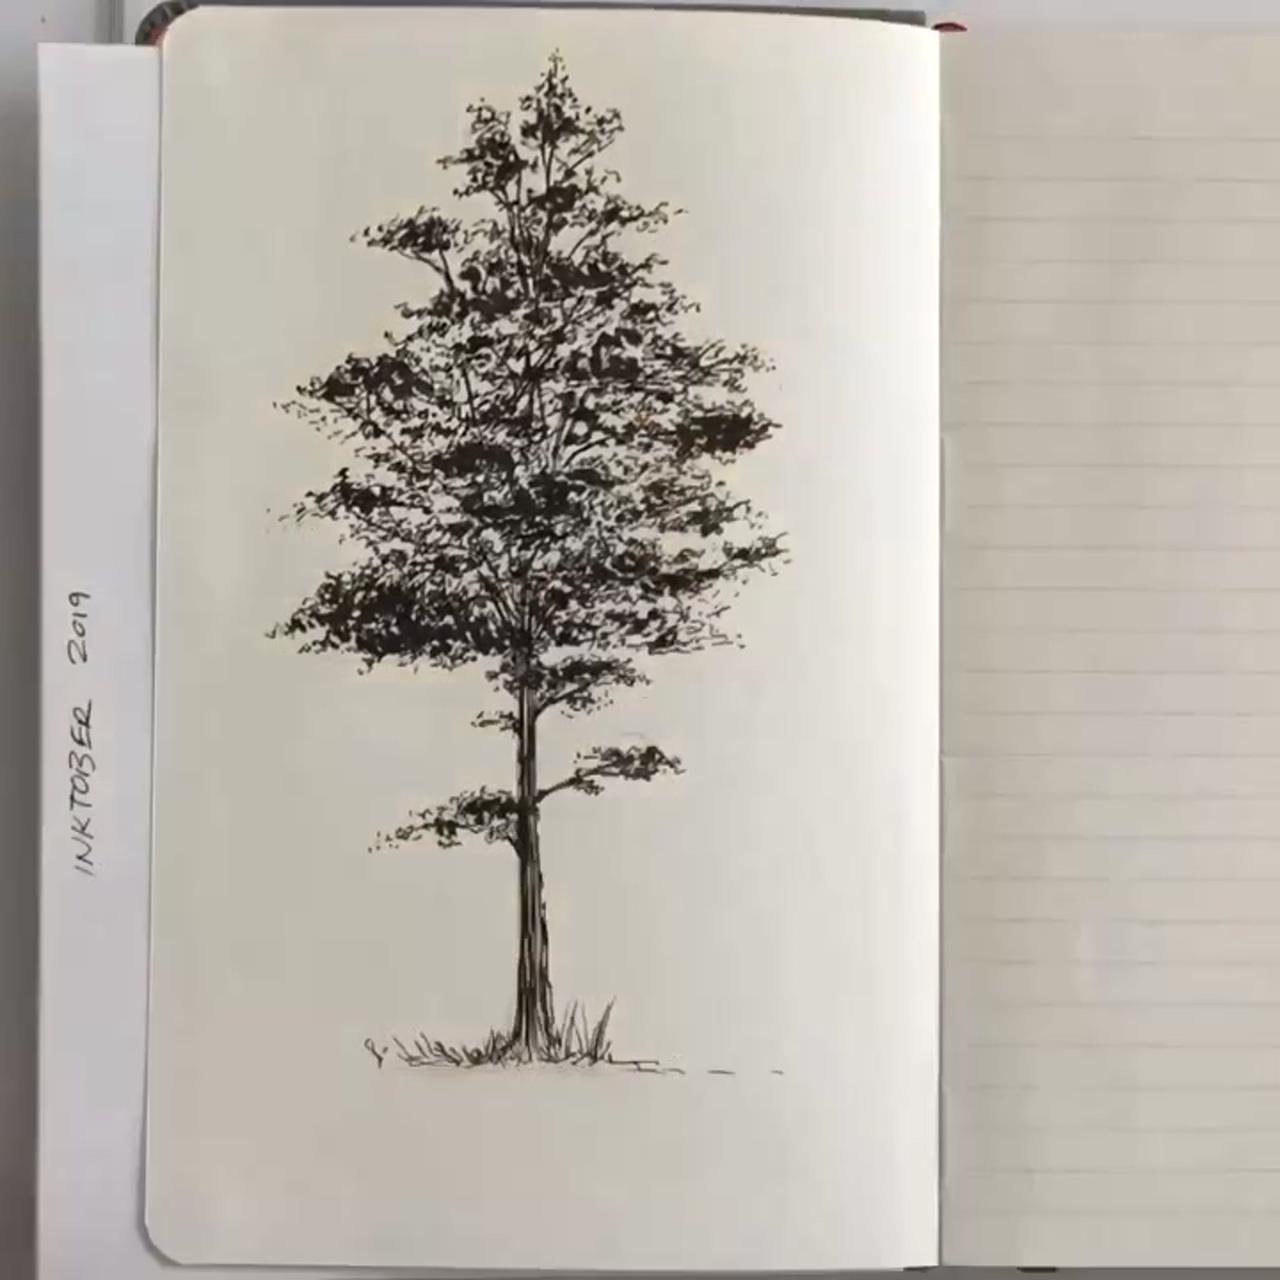 Tree drawing in pen by shannon perrie perriewinkles | tree drawings pencil